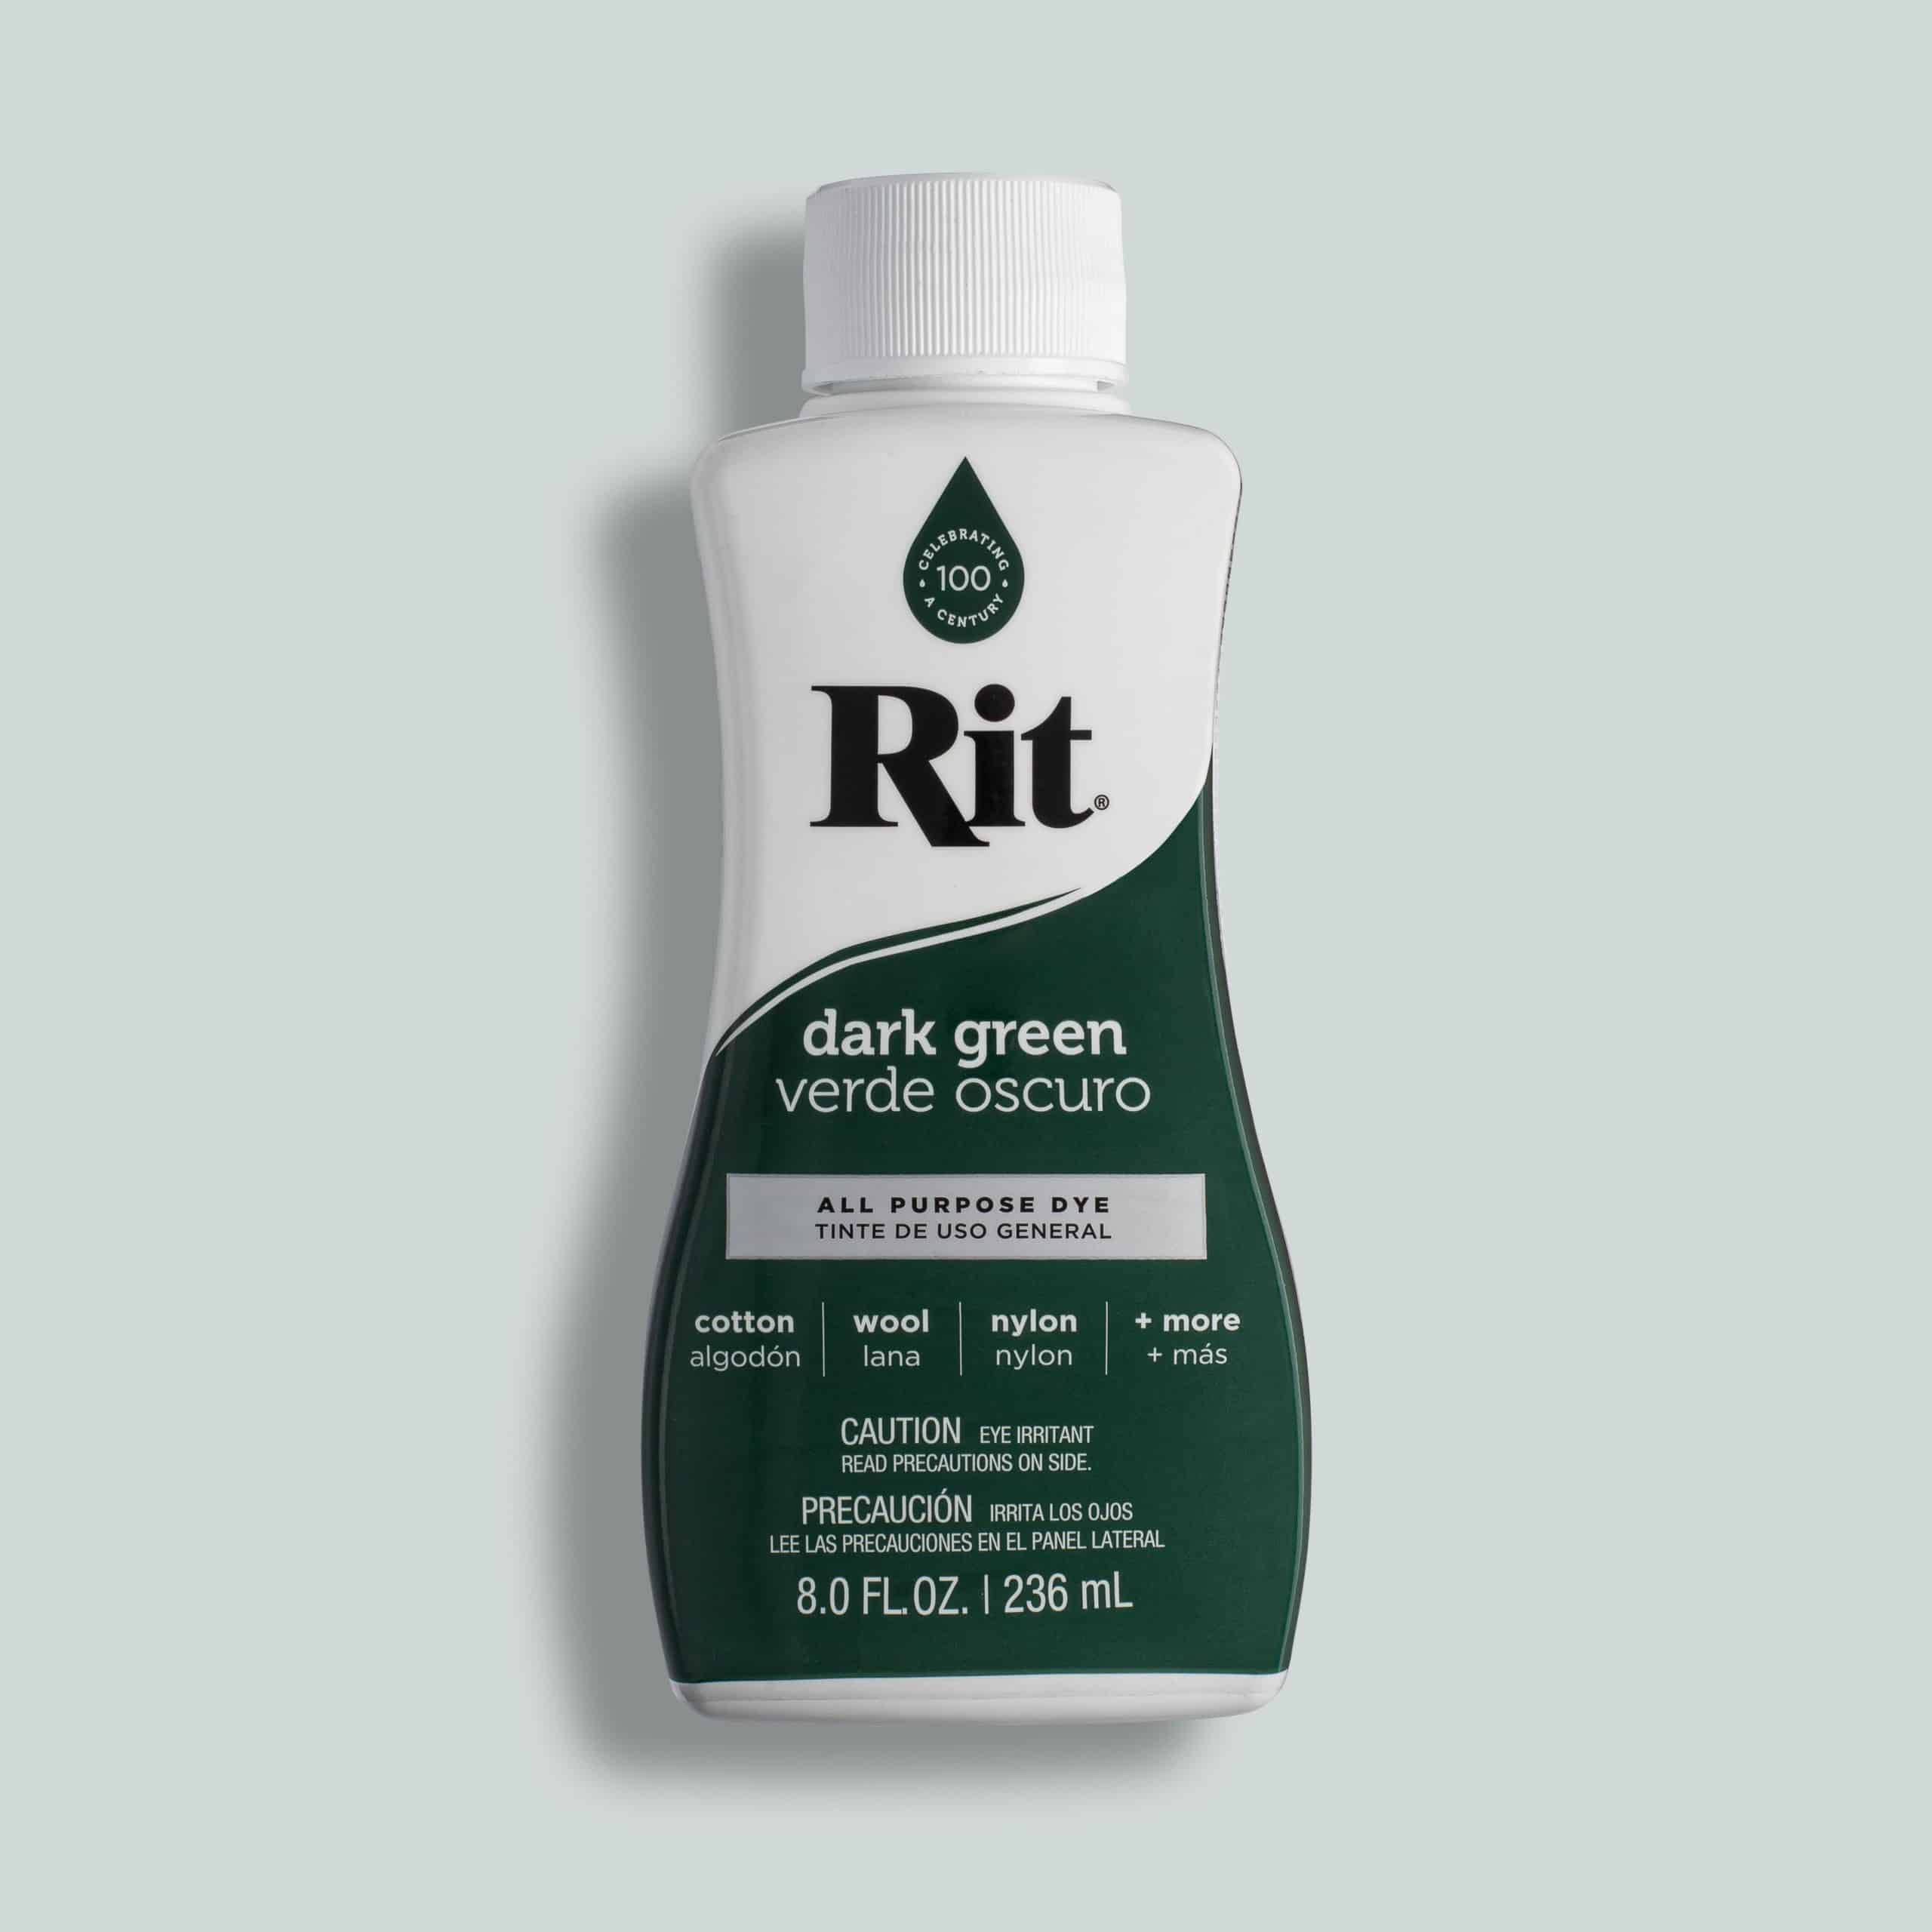 Rit All Purpose Dye, Kelly Green - 1.125 oz